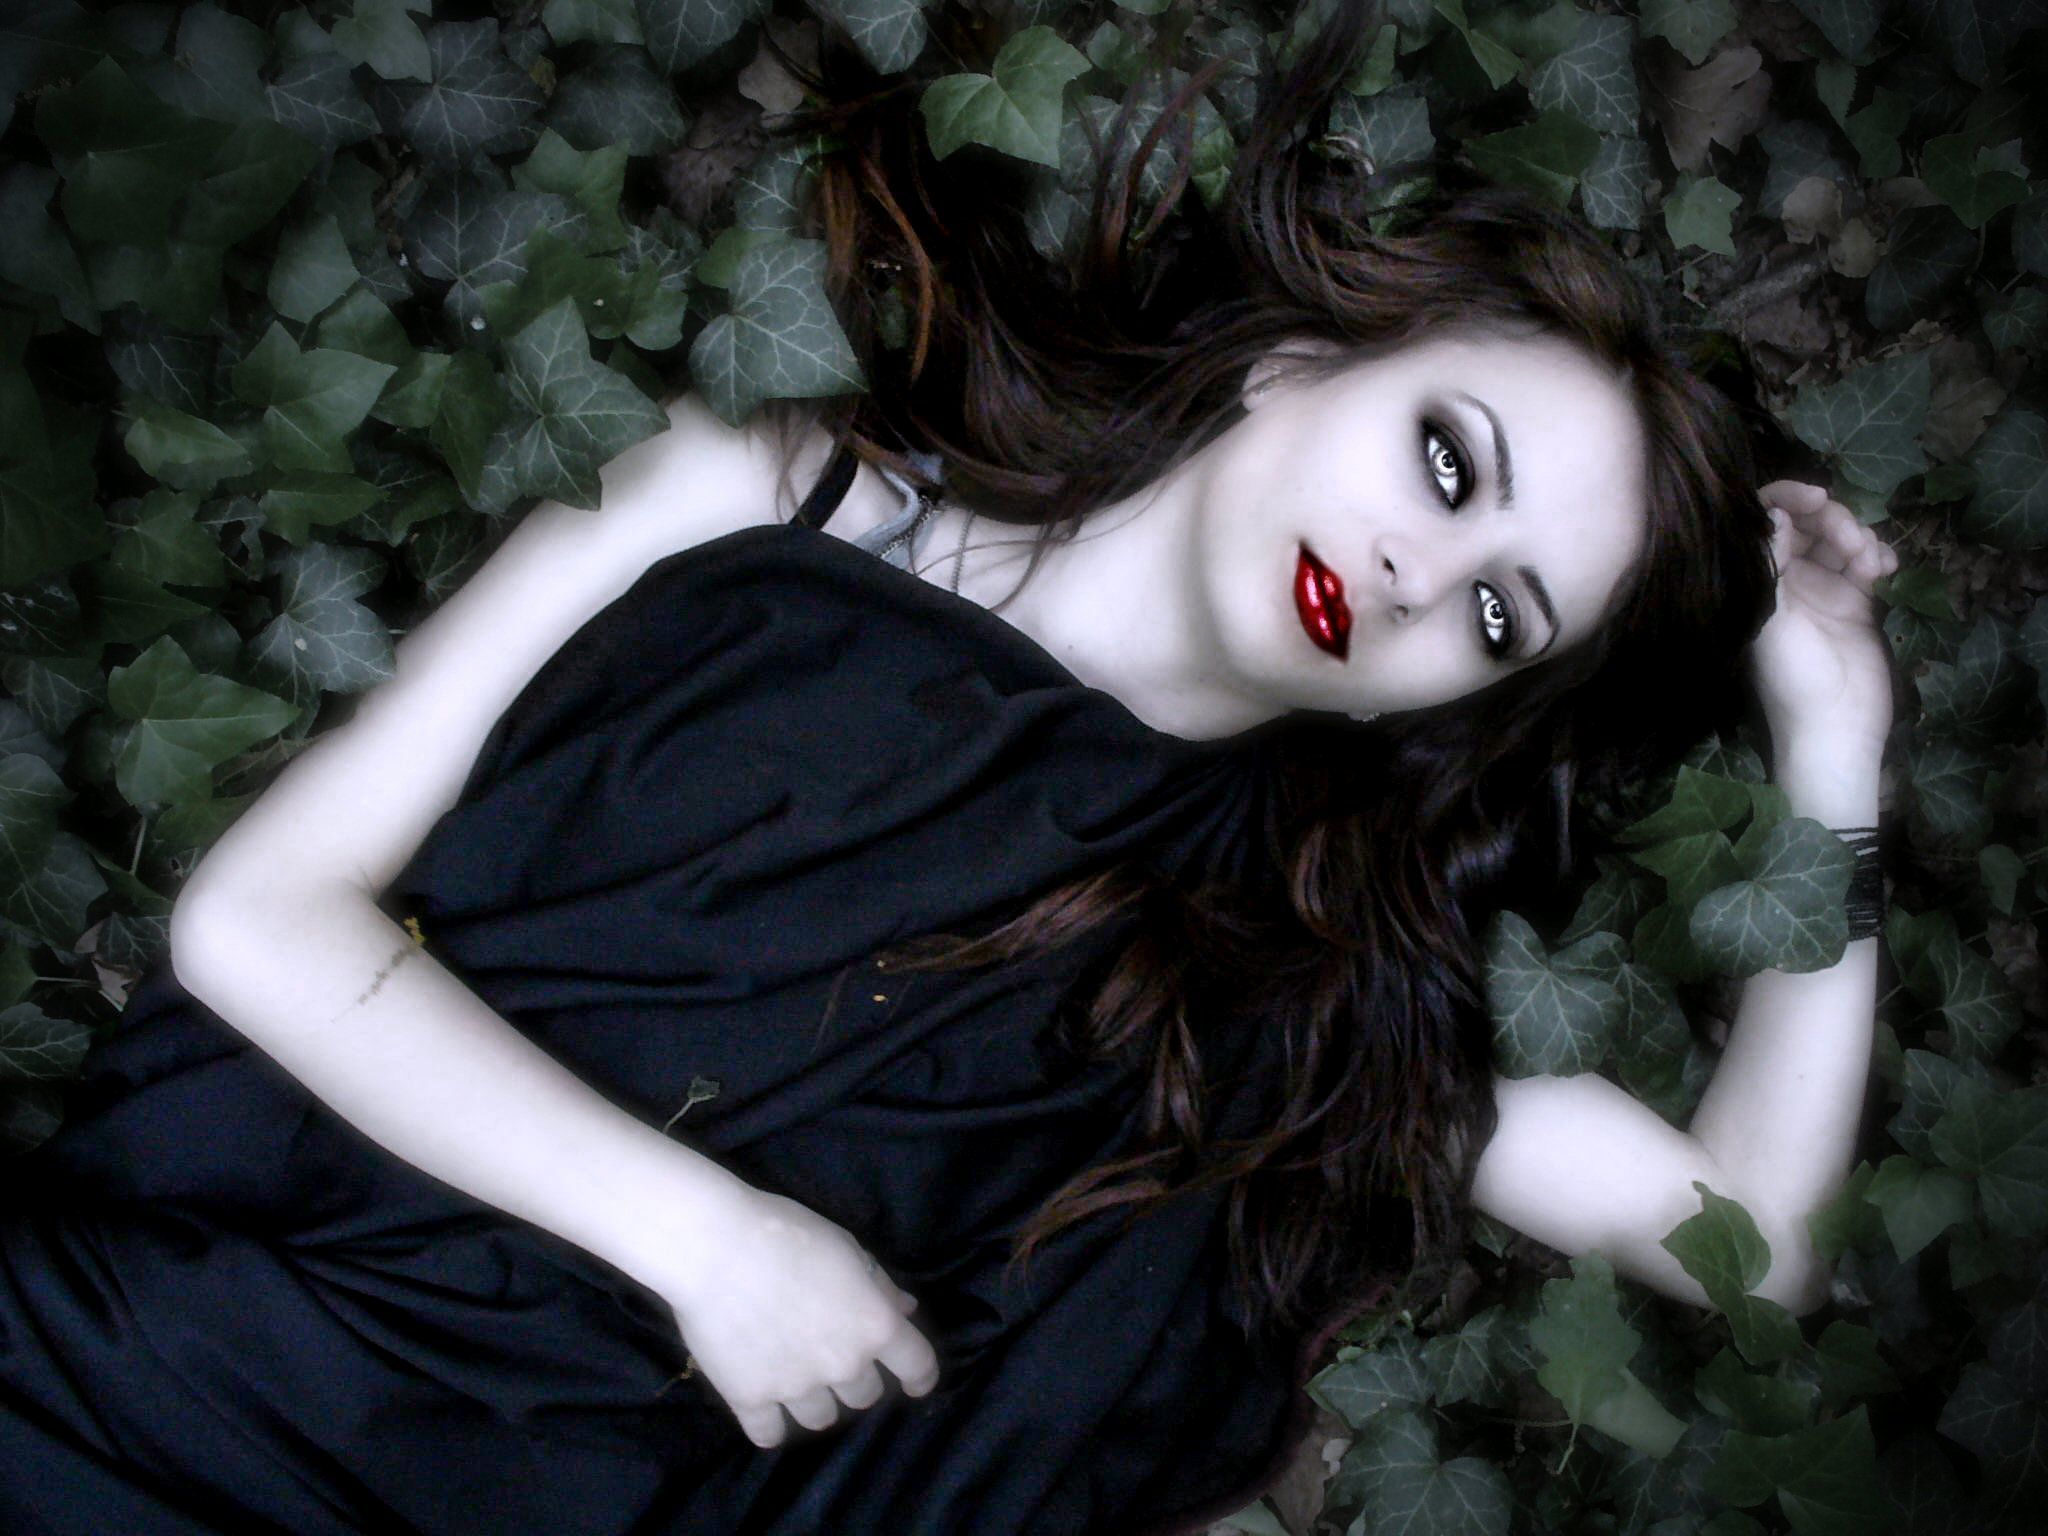 Vampire Girl lying in the leaves wallpaper from Vampire wallpaper. Vampire girls, Vampire picture, Dark evil